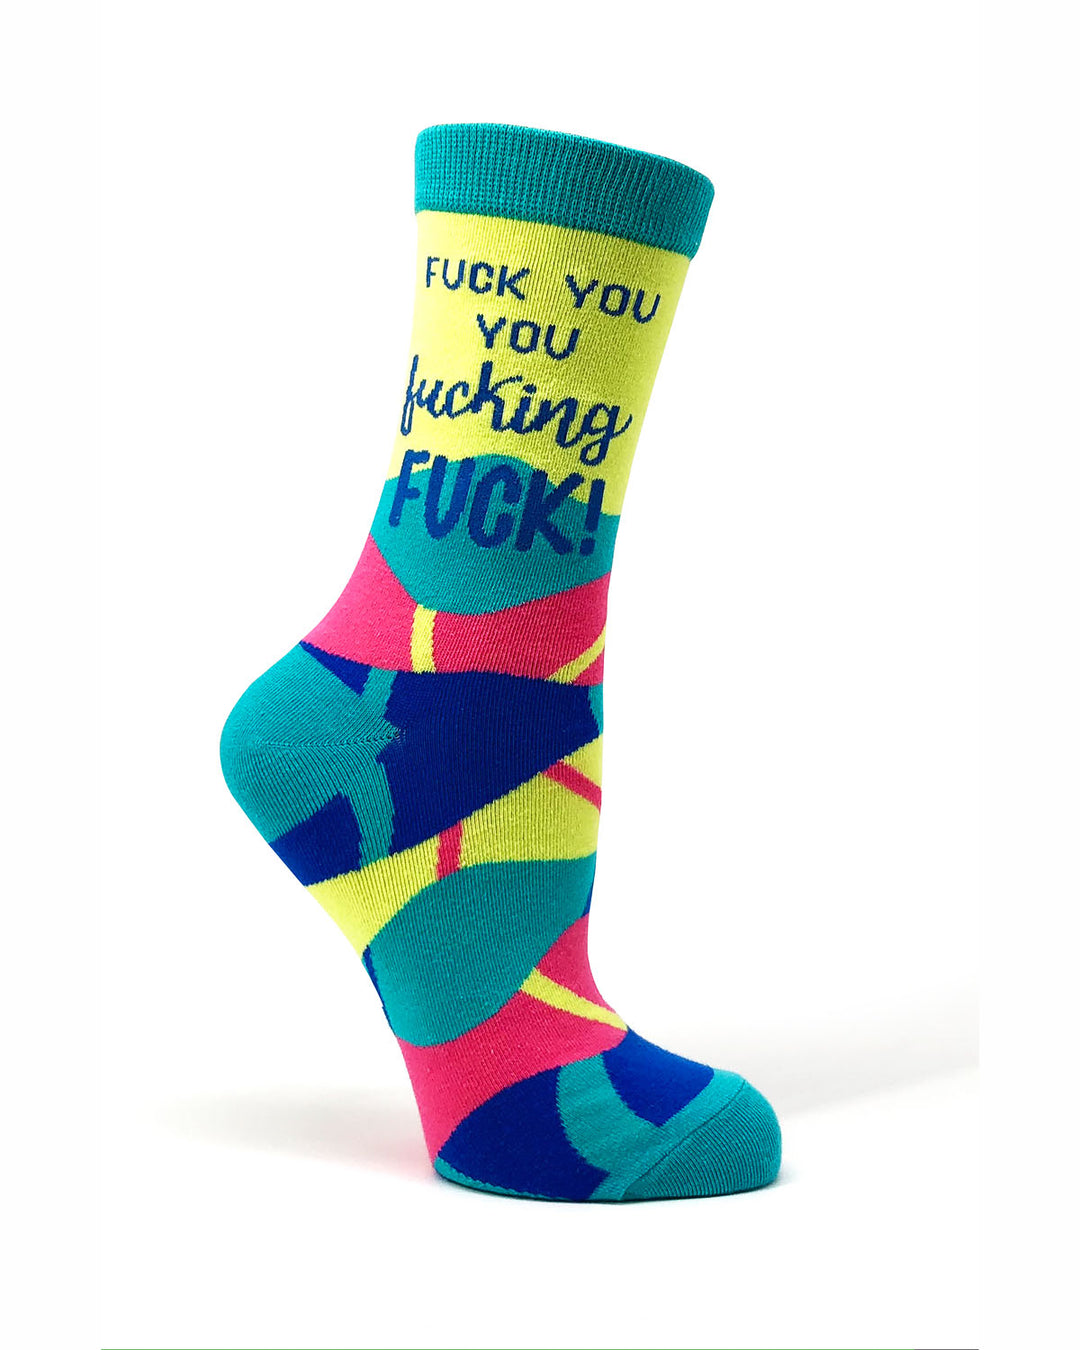 Fuck socks